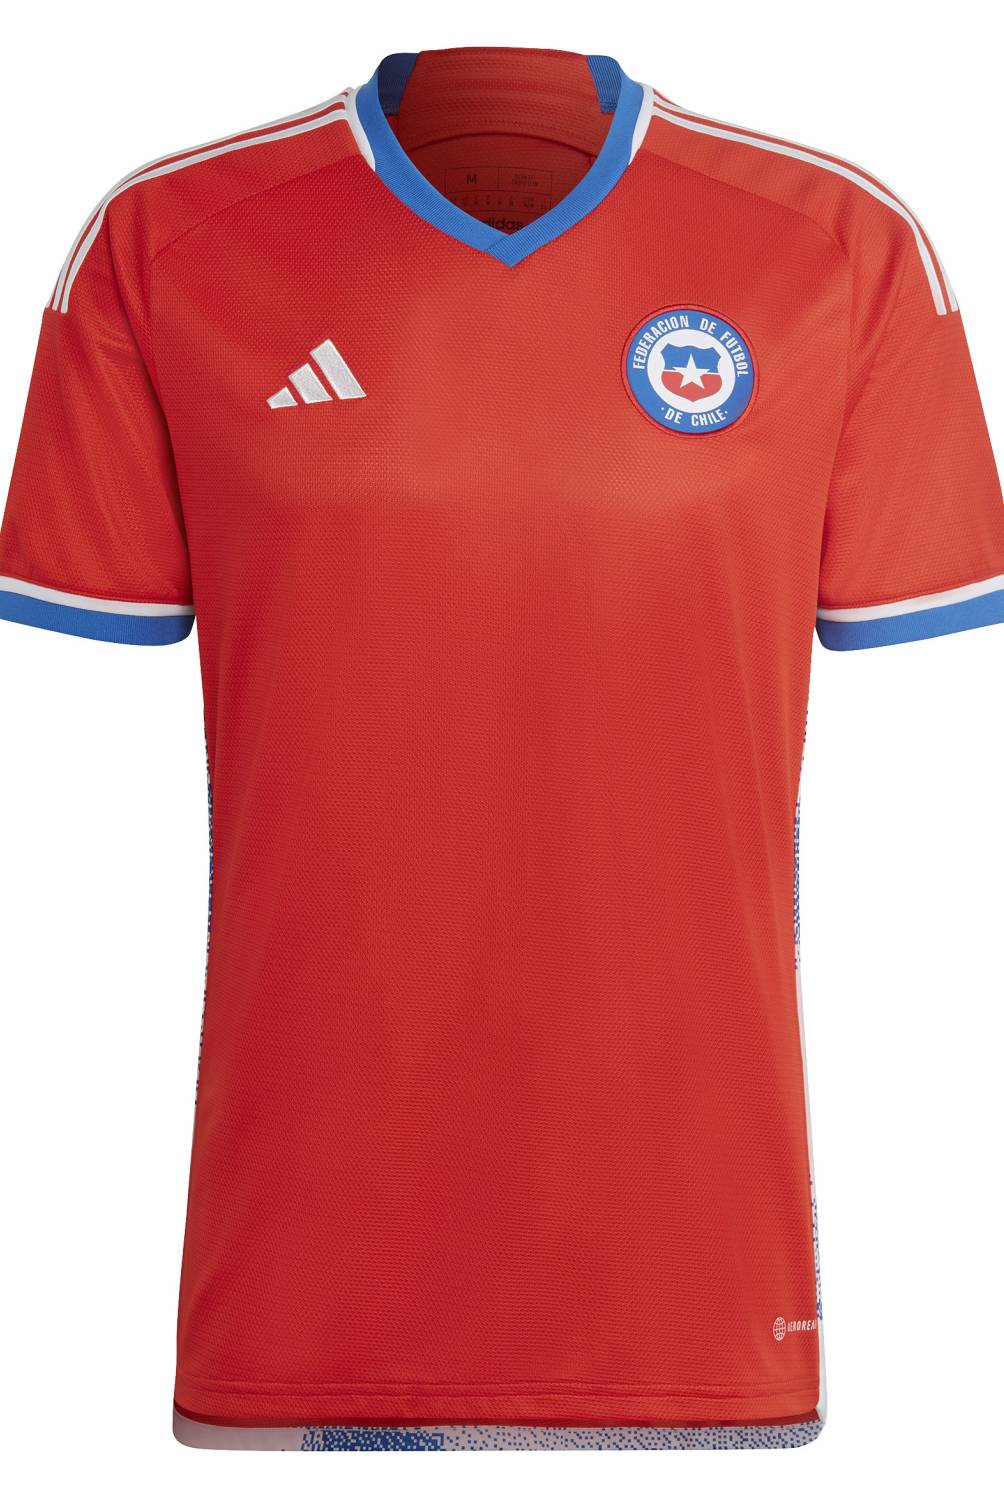 ADIDAS - Camiseta De Fútbol Selección Chilena Local Hombre Adidas